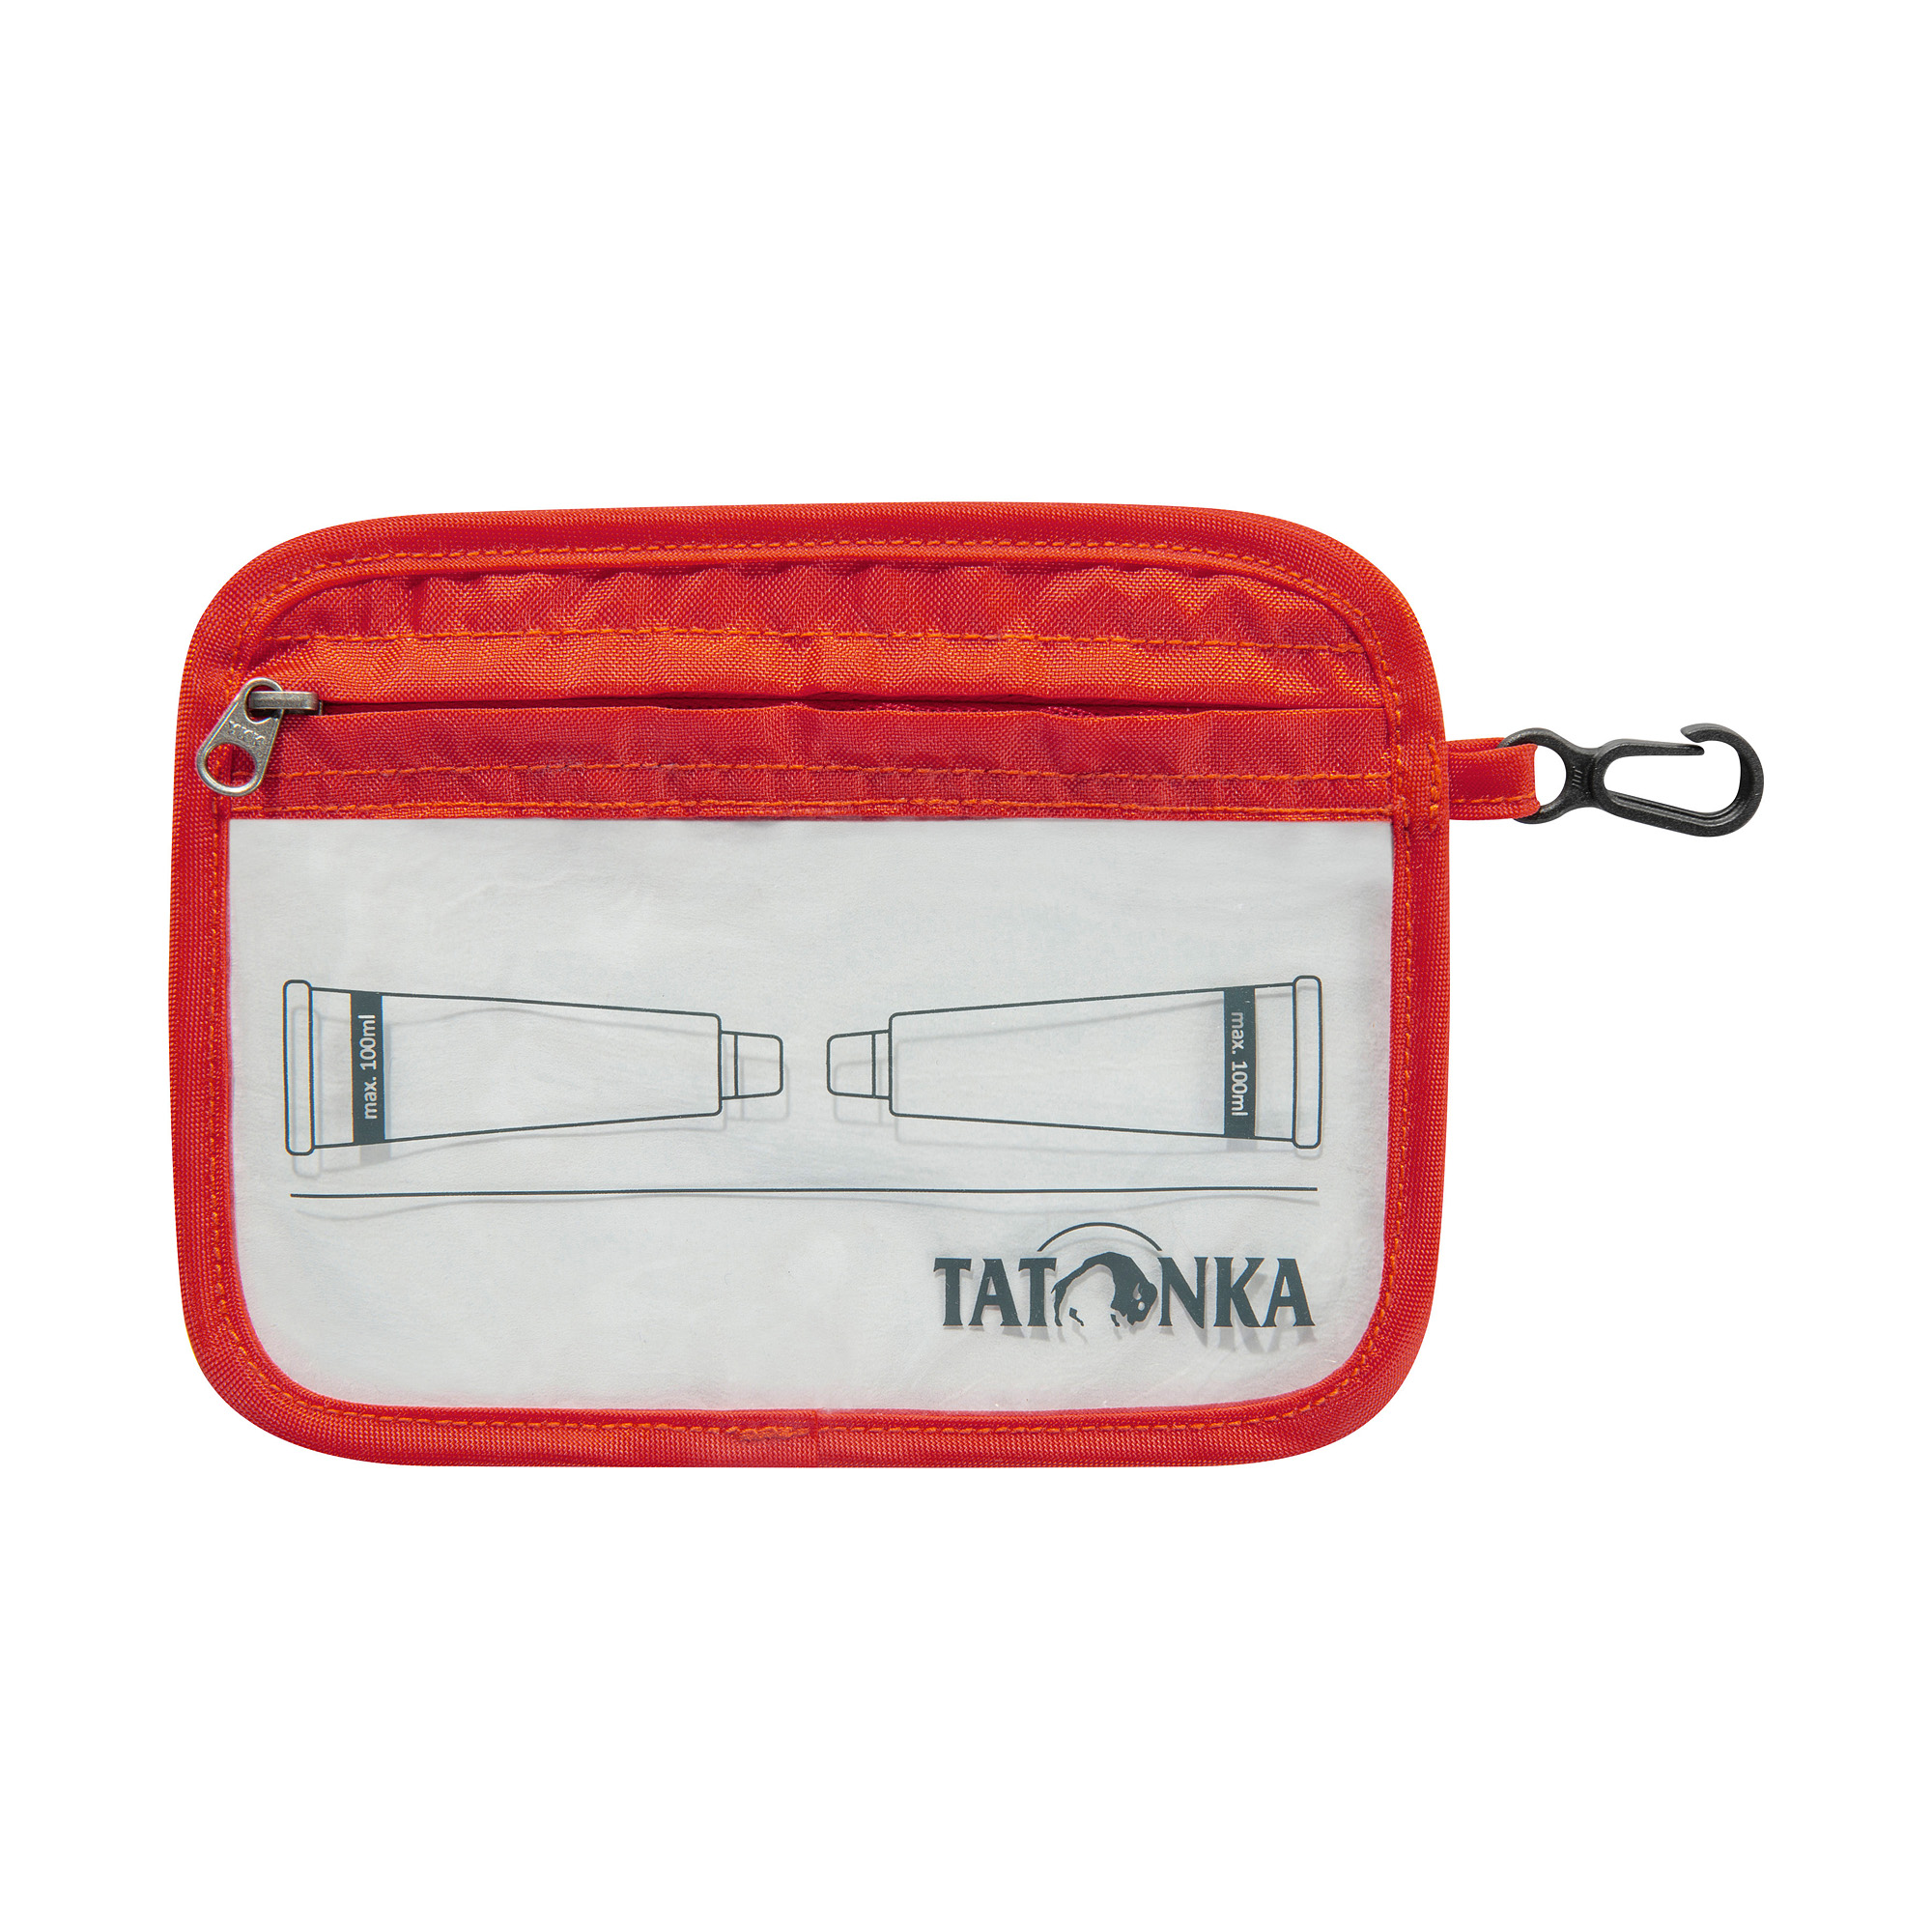 Tatonka Zip Flight Bag A6 red orange rot Kulturbeutel 4013236355628